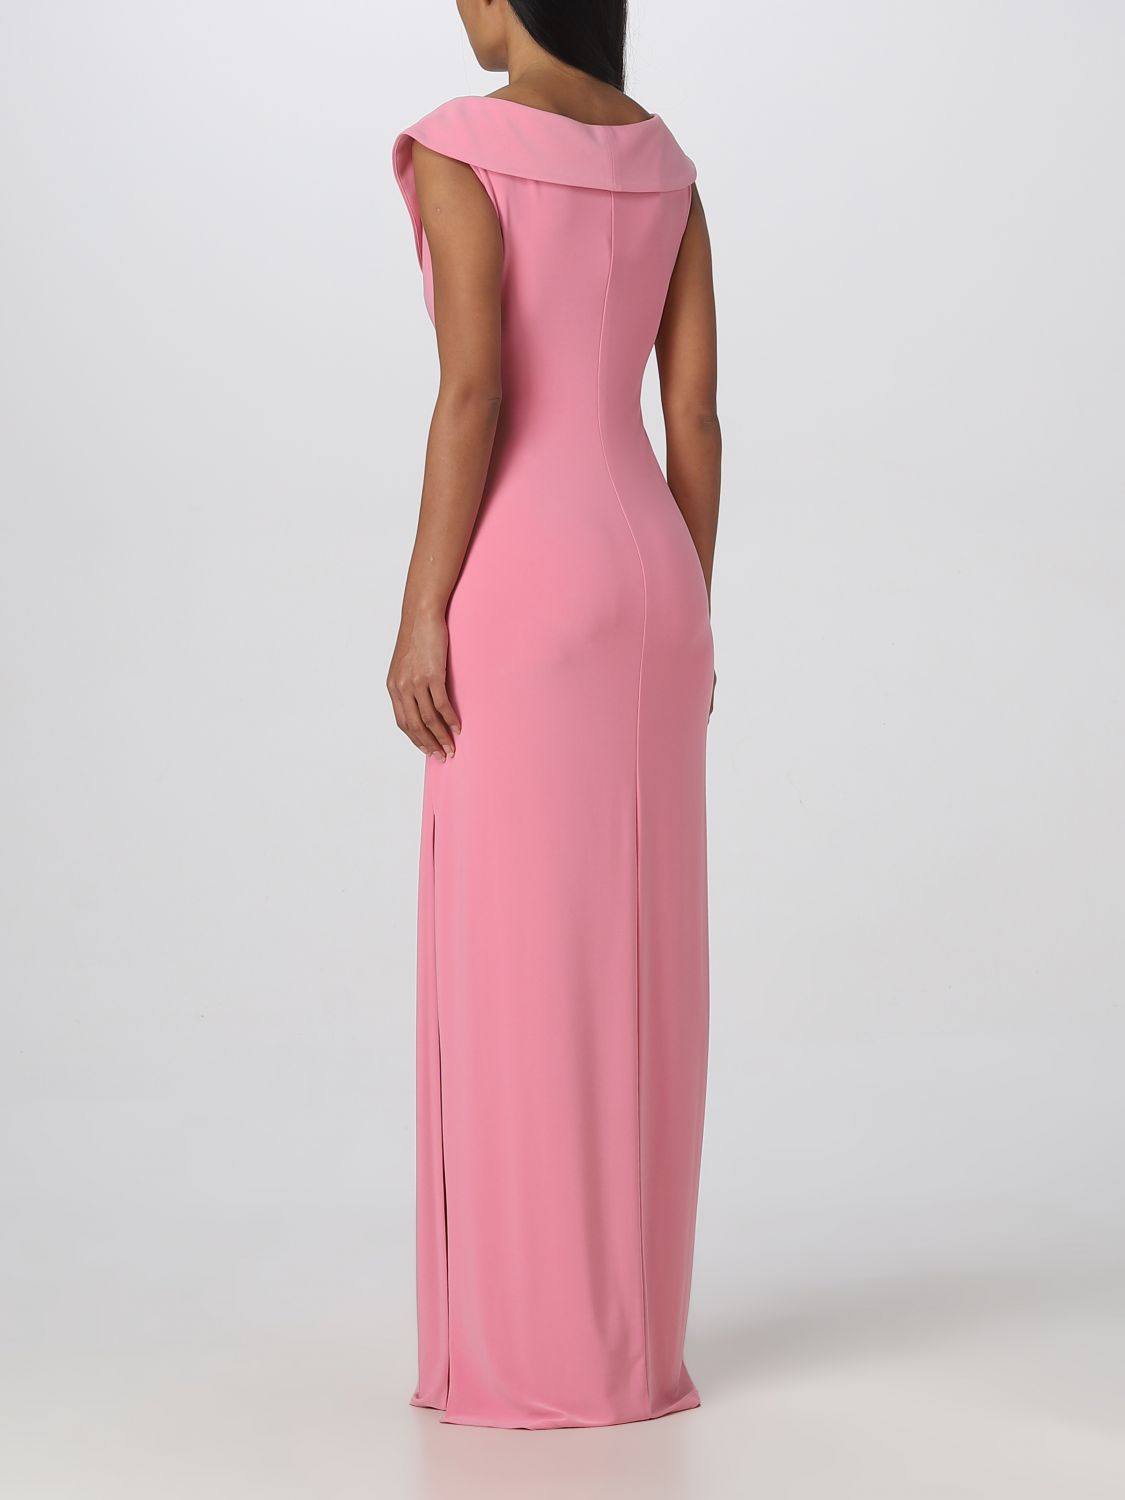 LAUREN RALPH LAUREN: dress for woman - Pink | Lauren Ralph Lauren dress  253863940 online on 